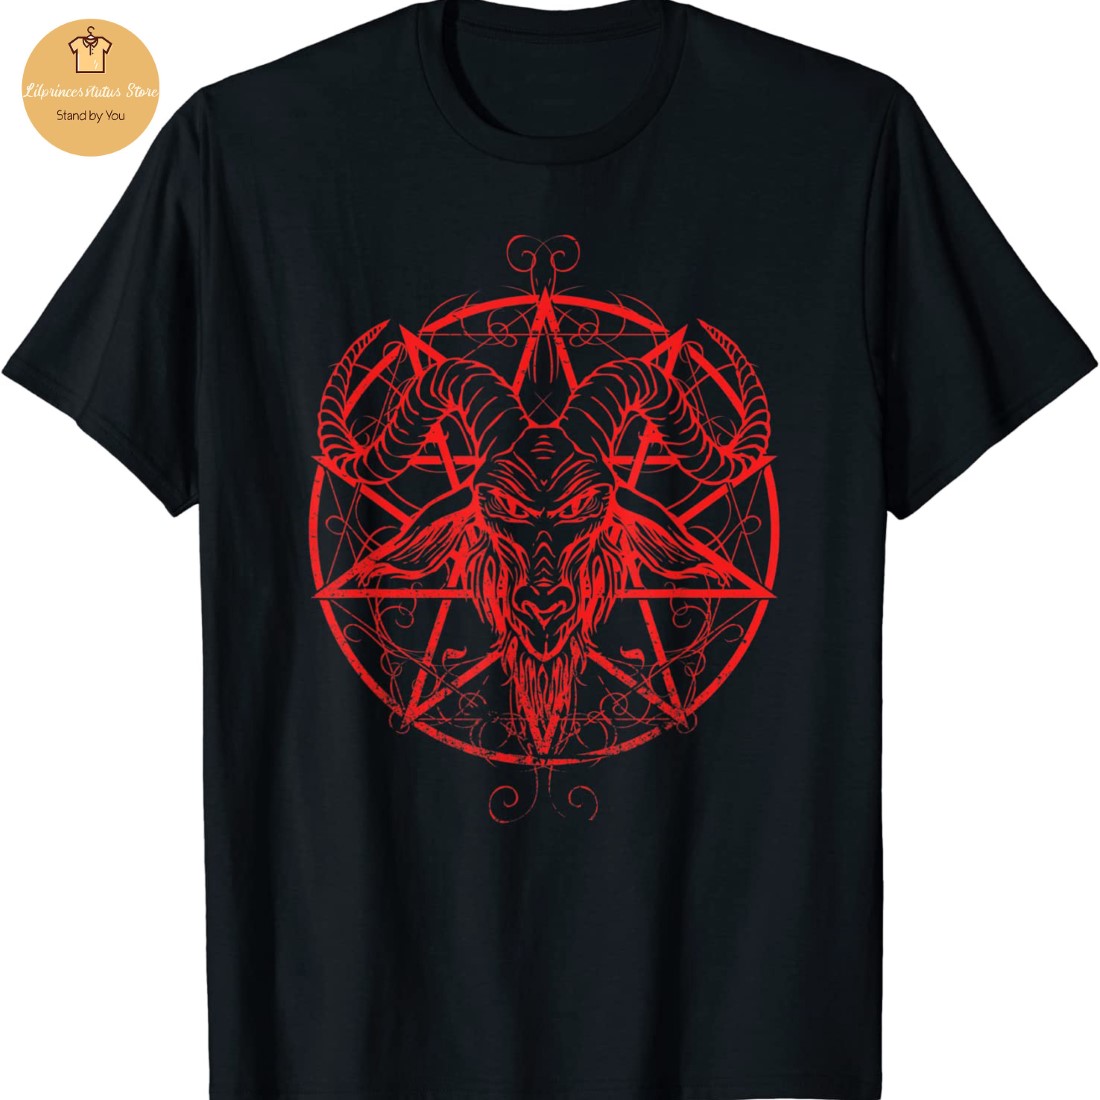 Stranger Things 4 Hellfire Club Black T-Shirt